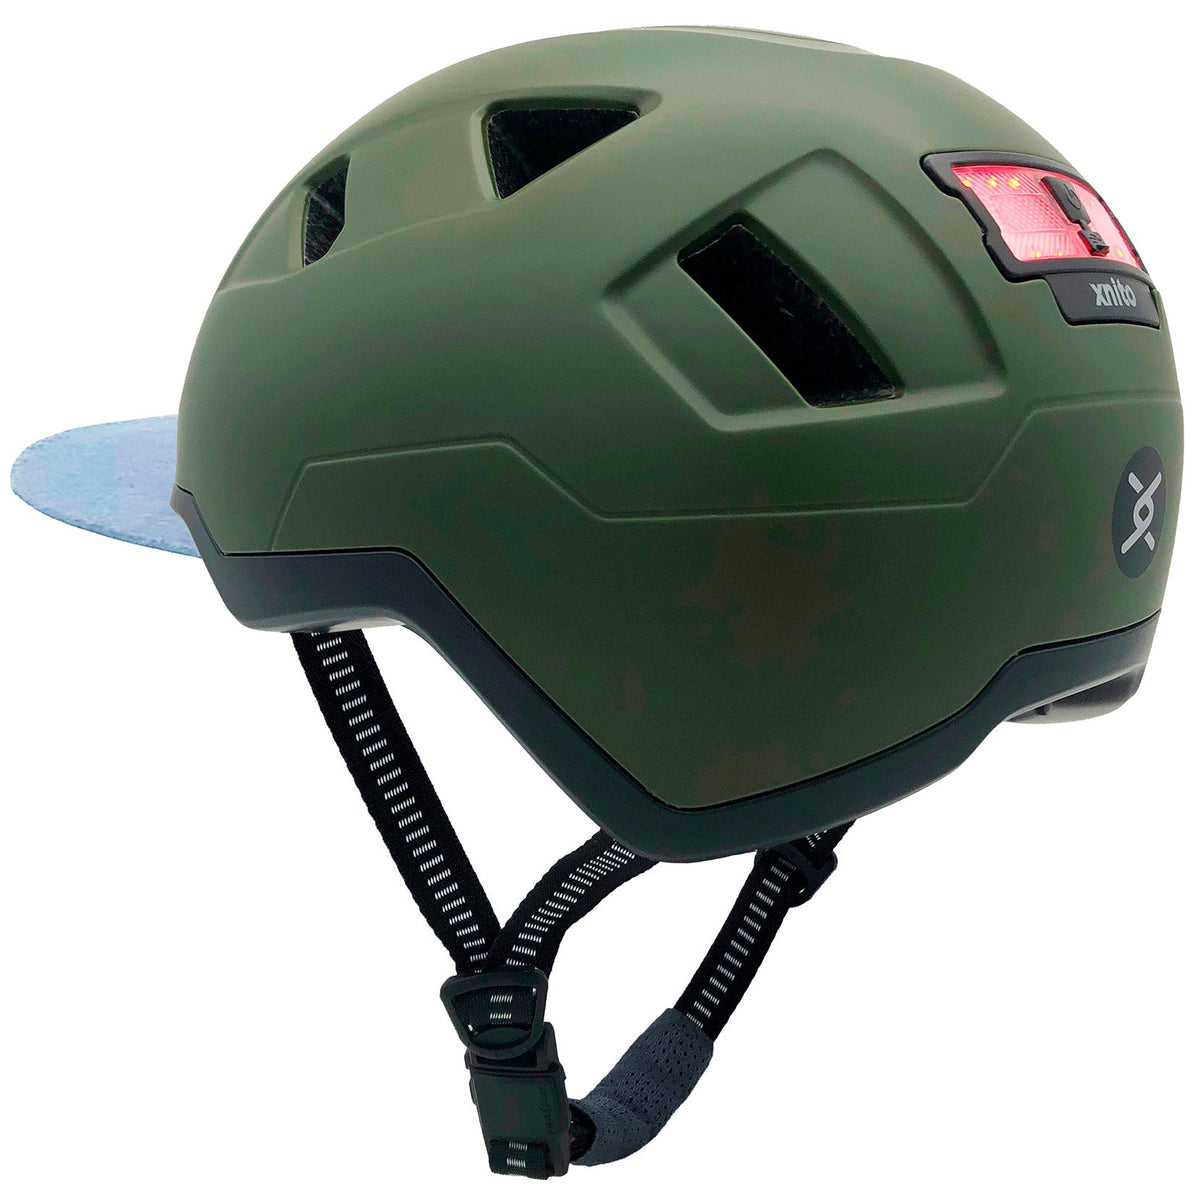 xnito ebike helmet in moss green